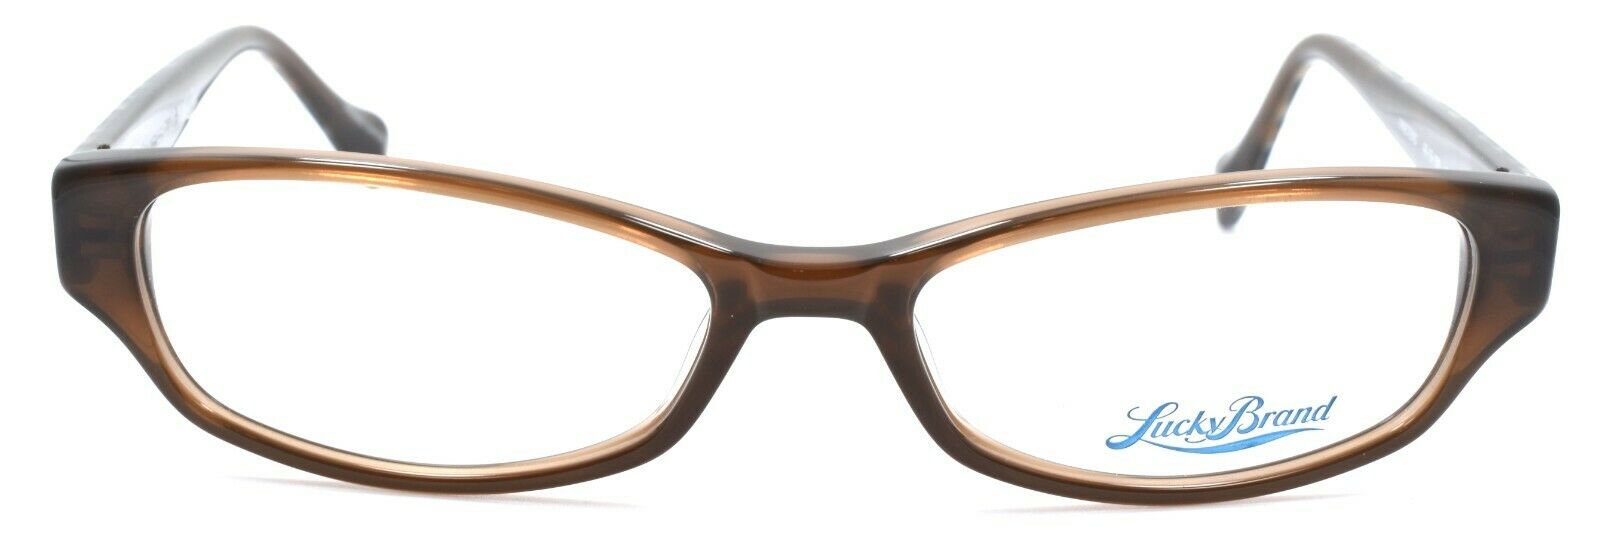 2-LUCKY BRAND Pretend Kids Girls Eyeglasses Frames 49-15-130 Brown-751286264036-IKSpecs